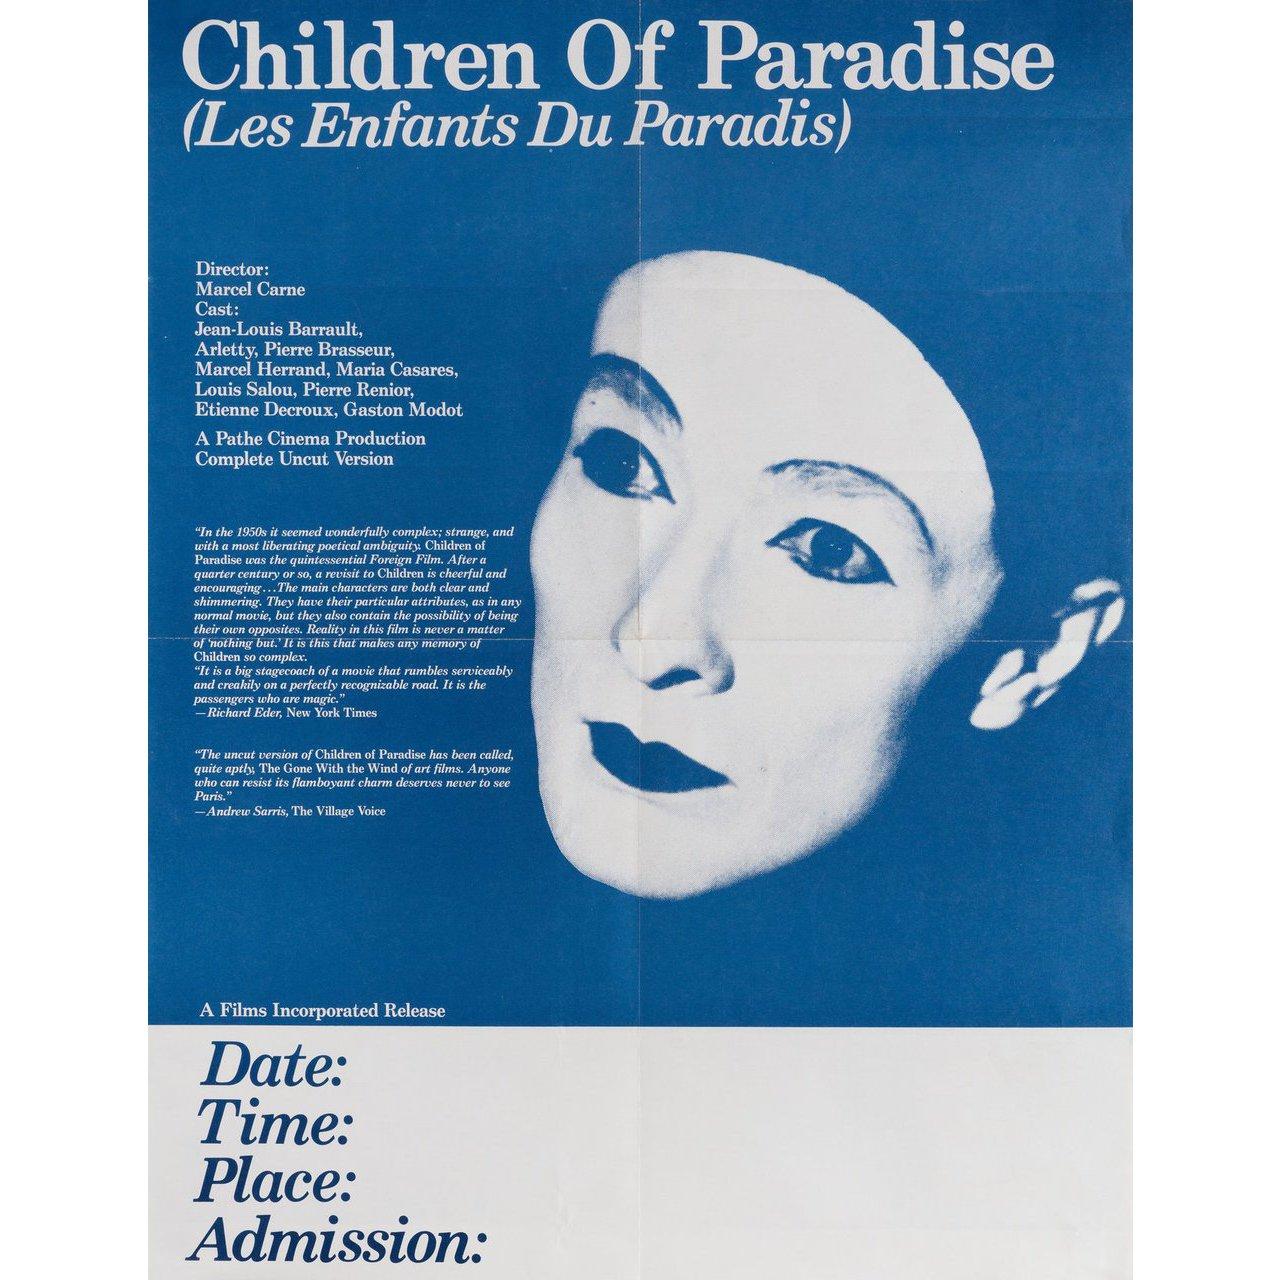 American Les Enfants du Paradis R1970s U.S. Mini Film Poster For Sale